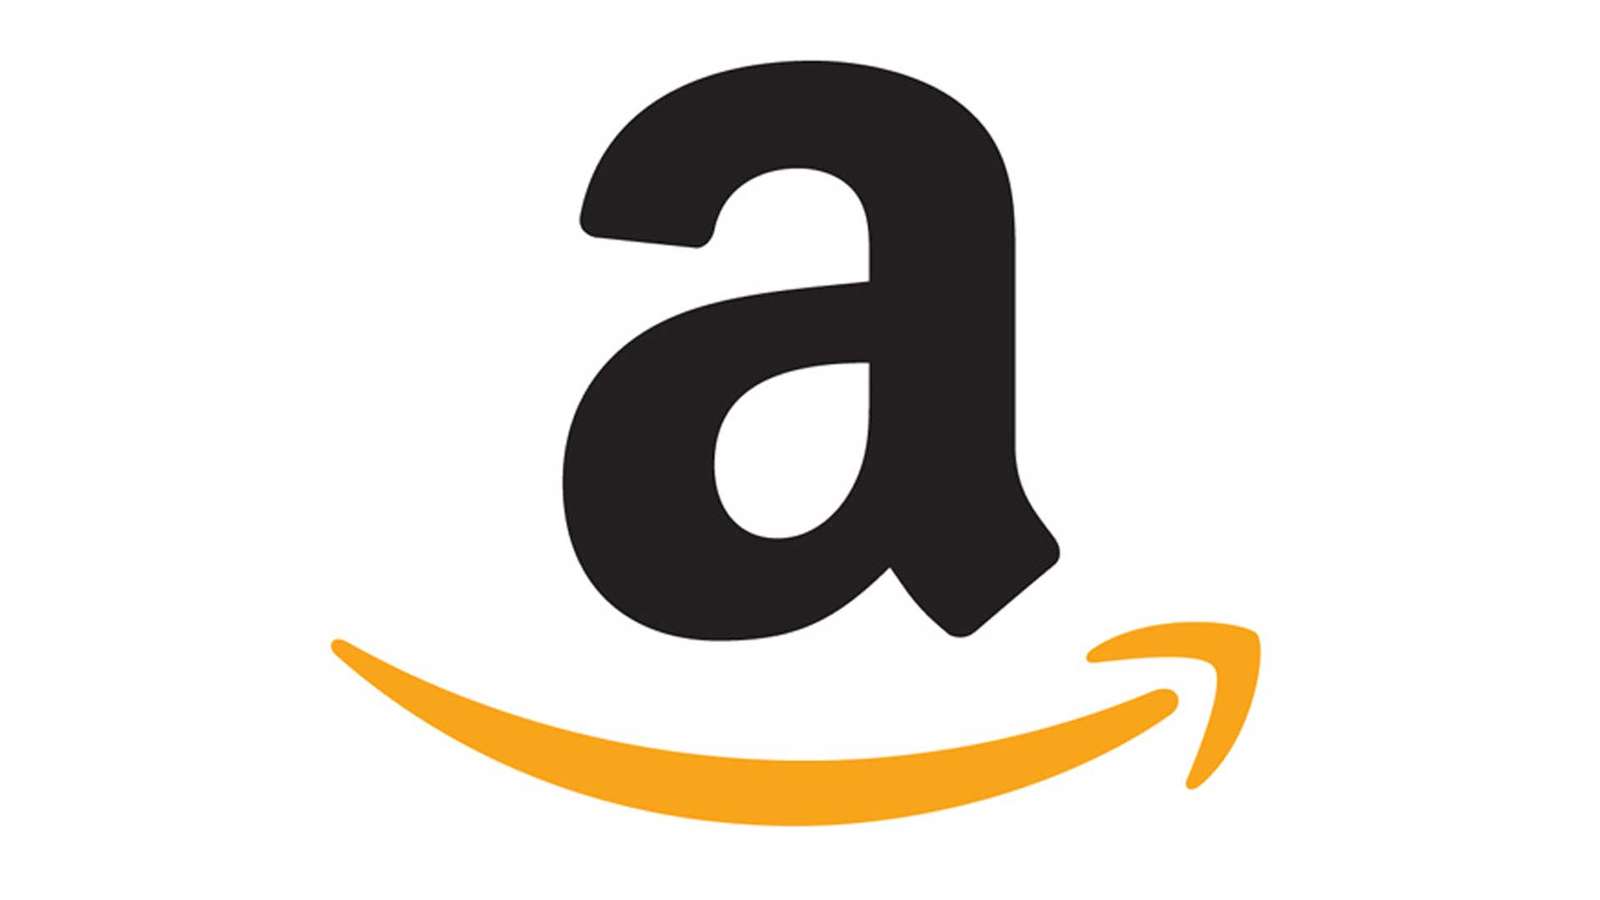 головоломка з логотипом Amazon онлайн пазл